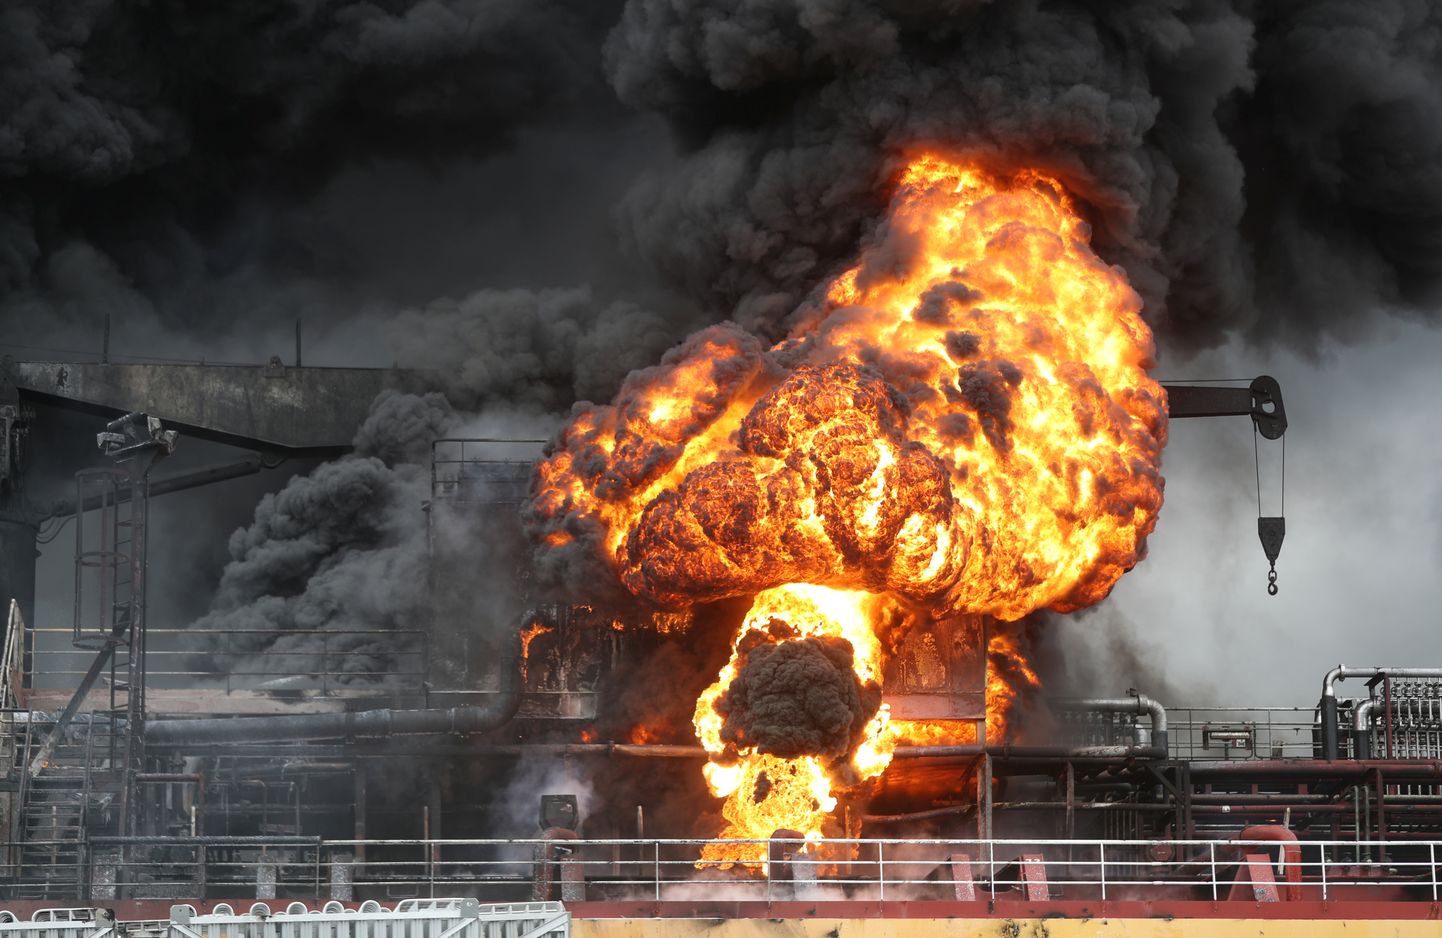 Lõuna-Koreas Ulsani sadamas täna tankeril kärgatanud plahvatus ja tulekahju.